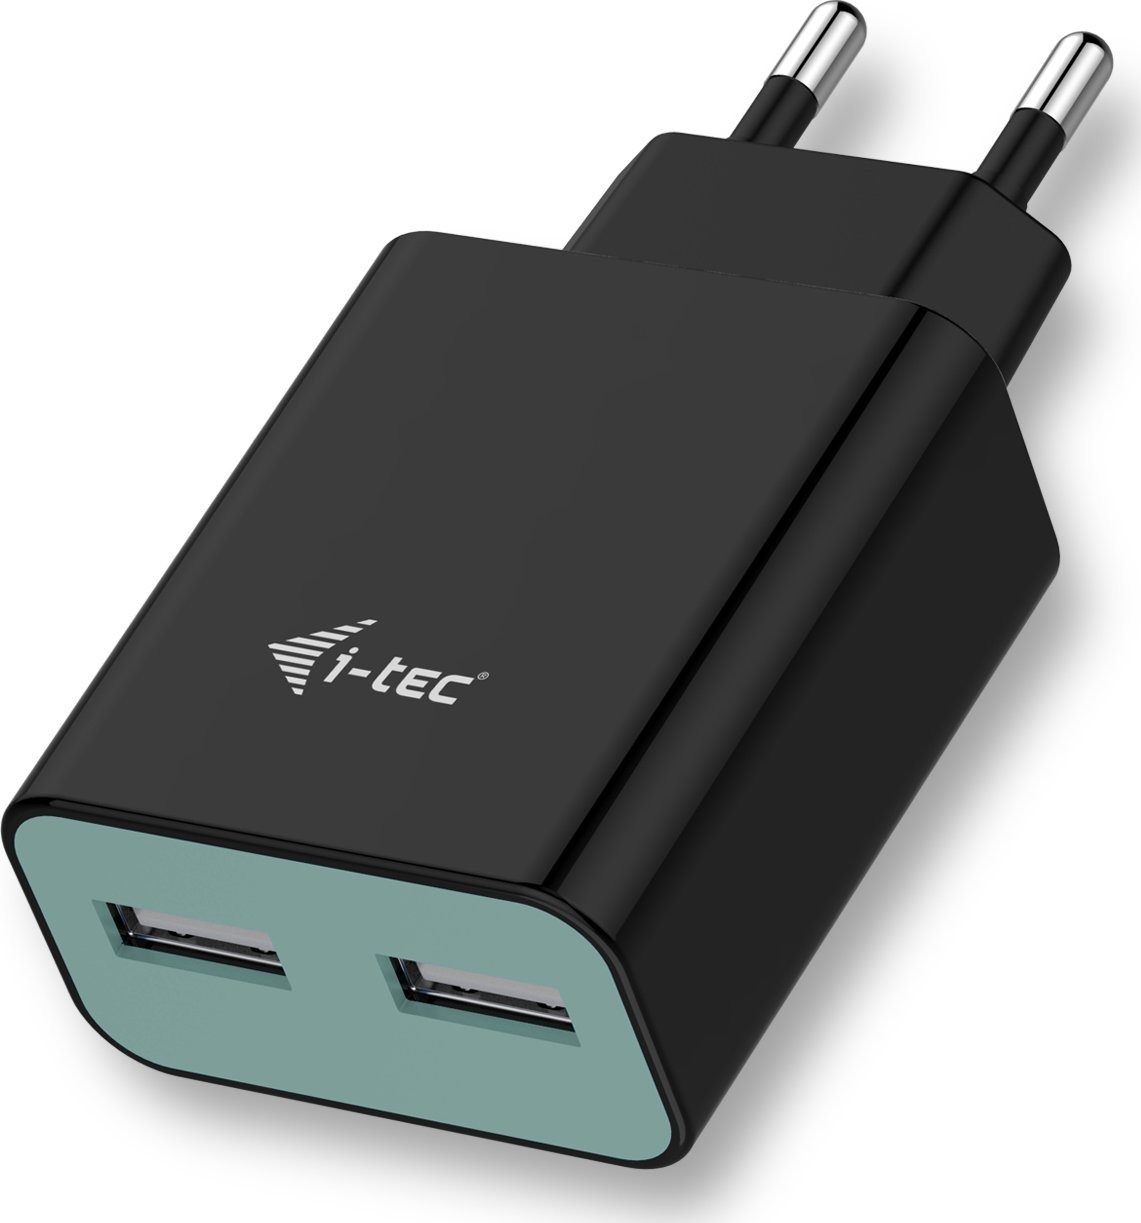 i-TEC USB Power Charger 2 Port 2.4A Black